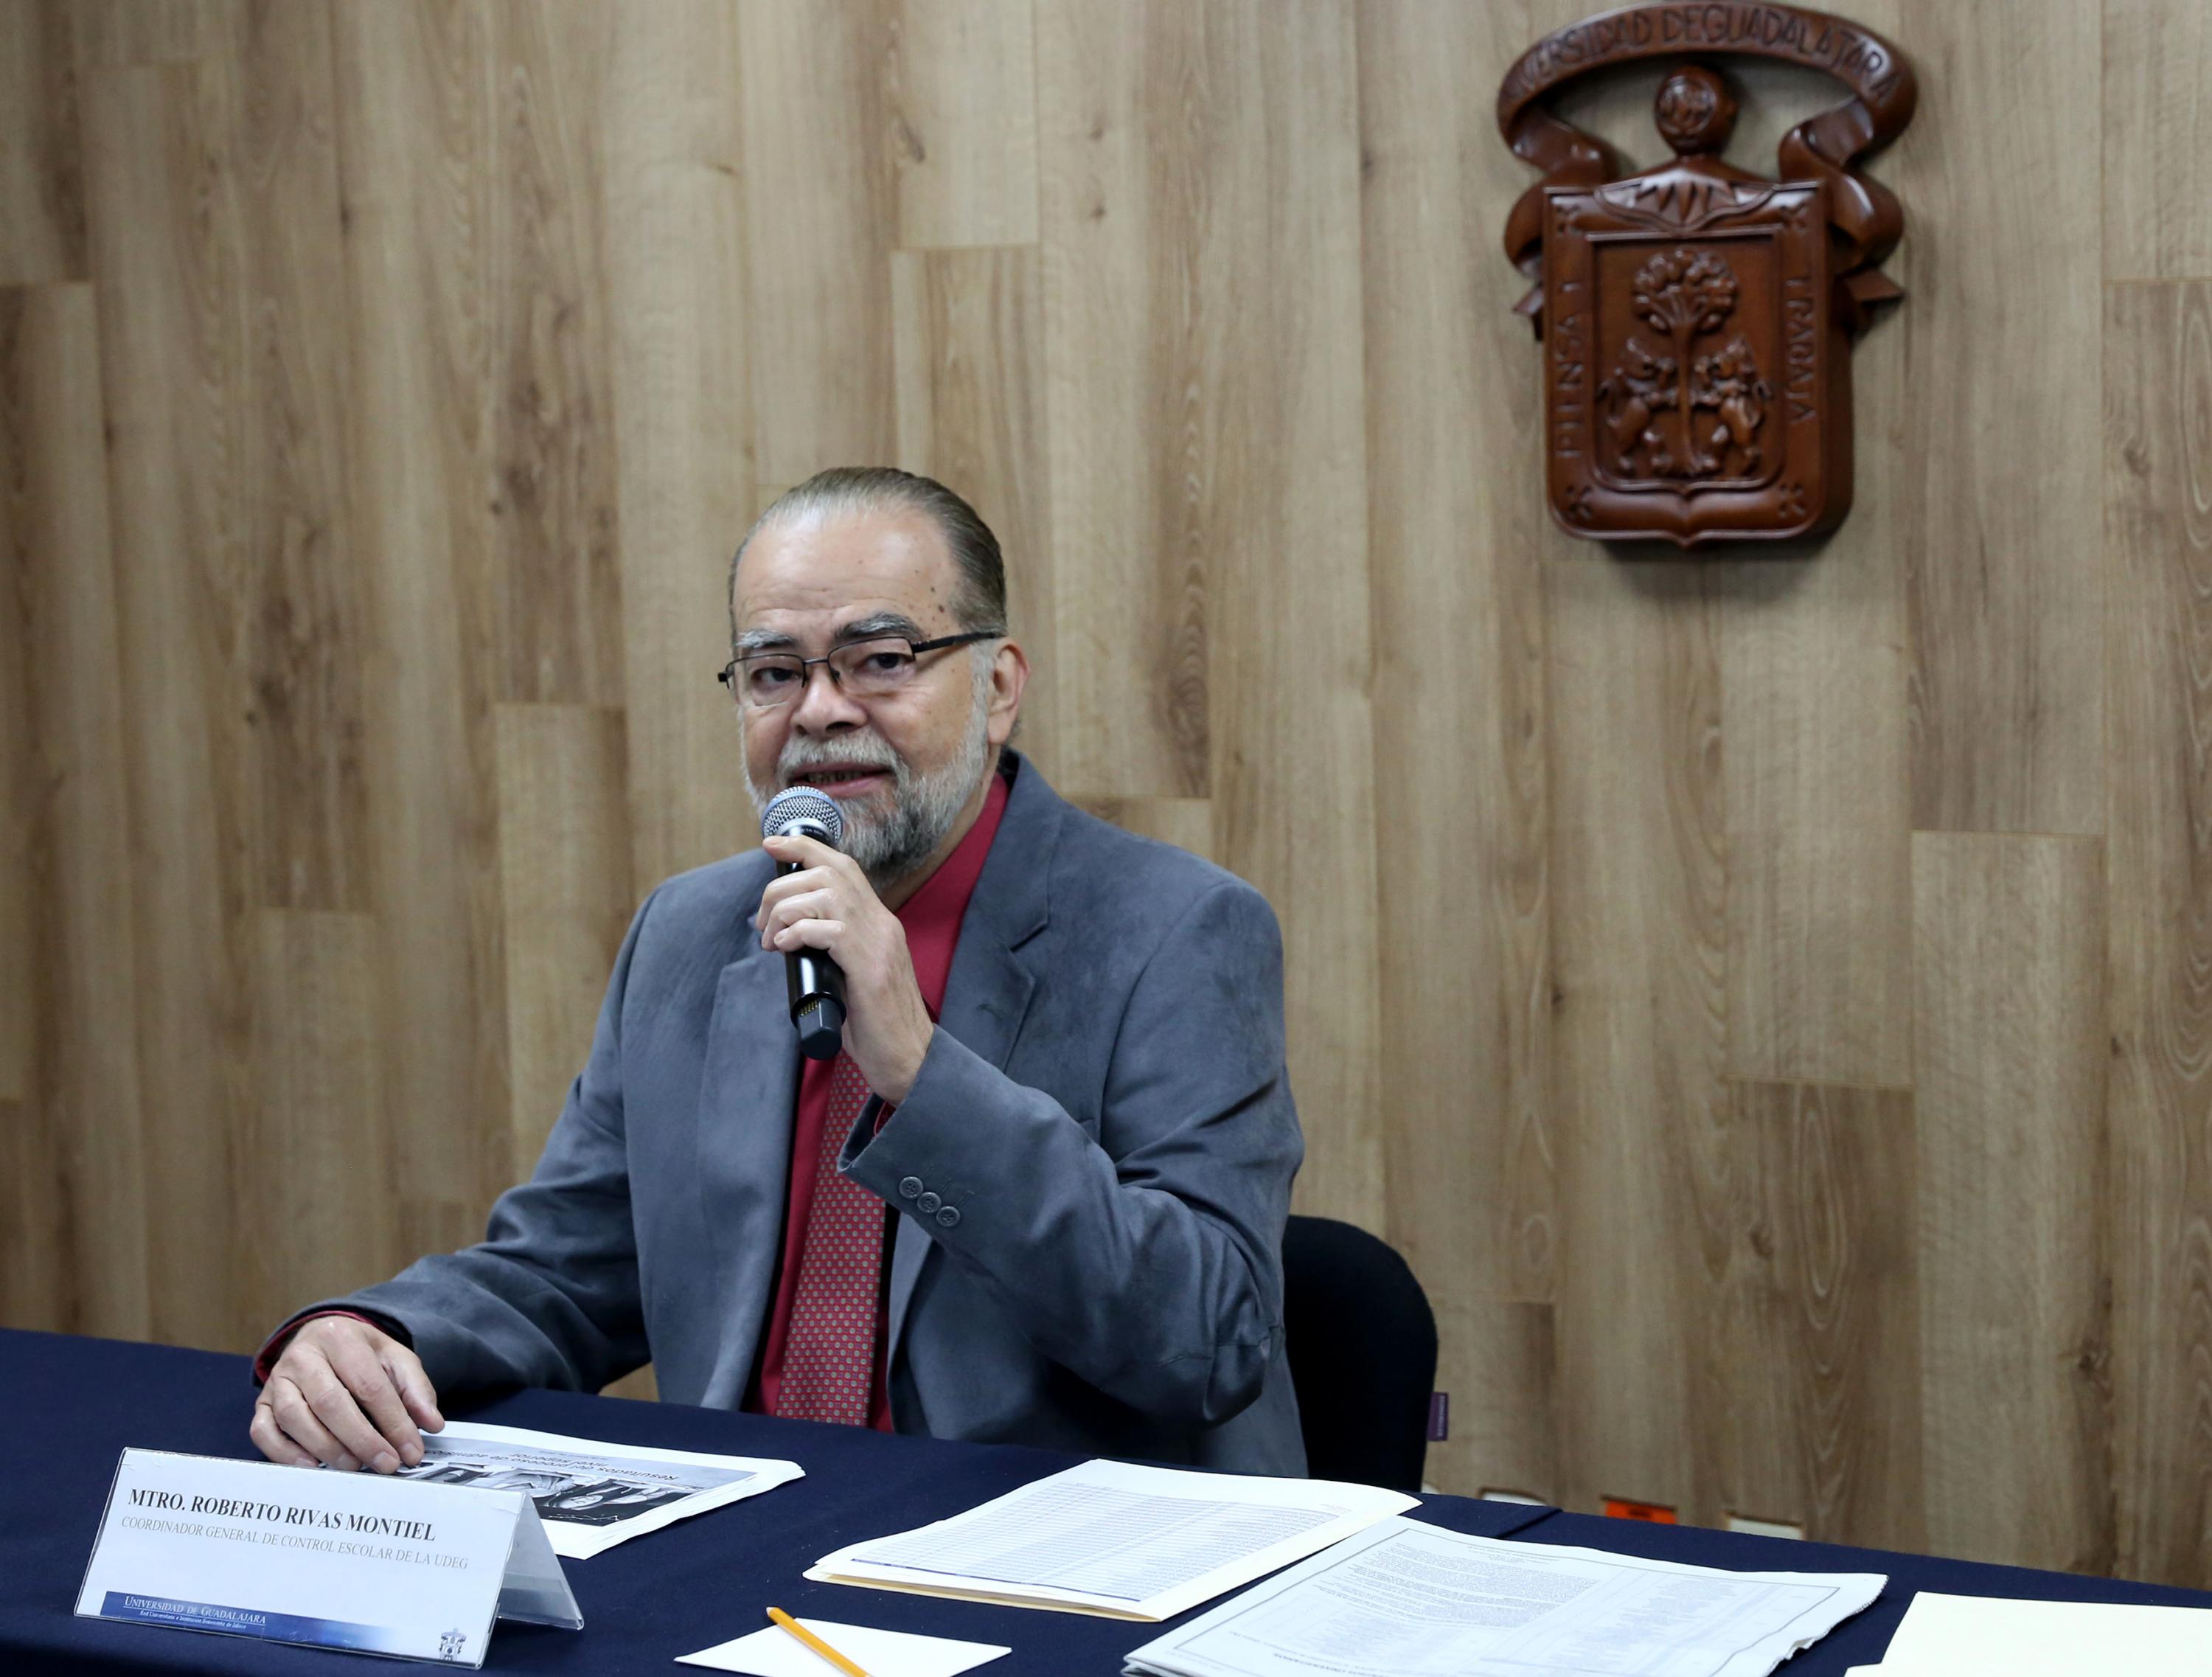 El maestro Roberto Rivas Montiel en la mesa de presentación de la sala de prensa de la UDG